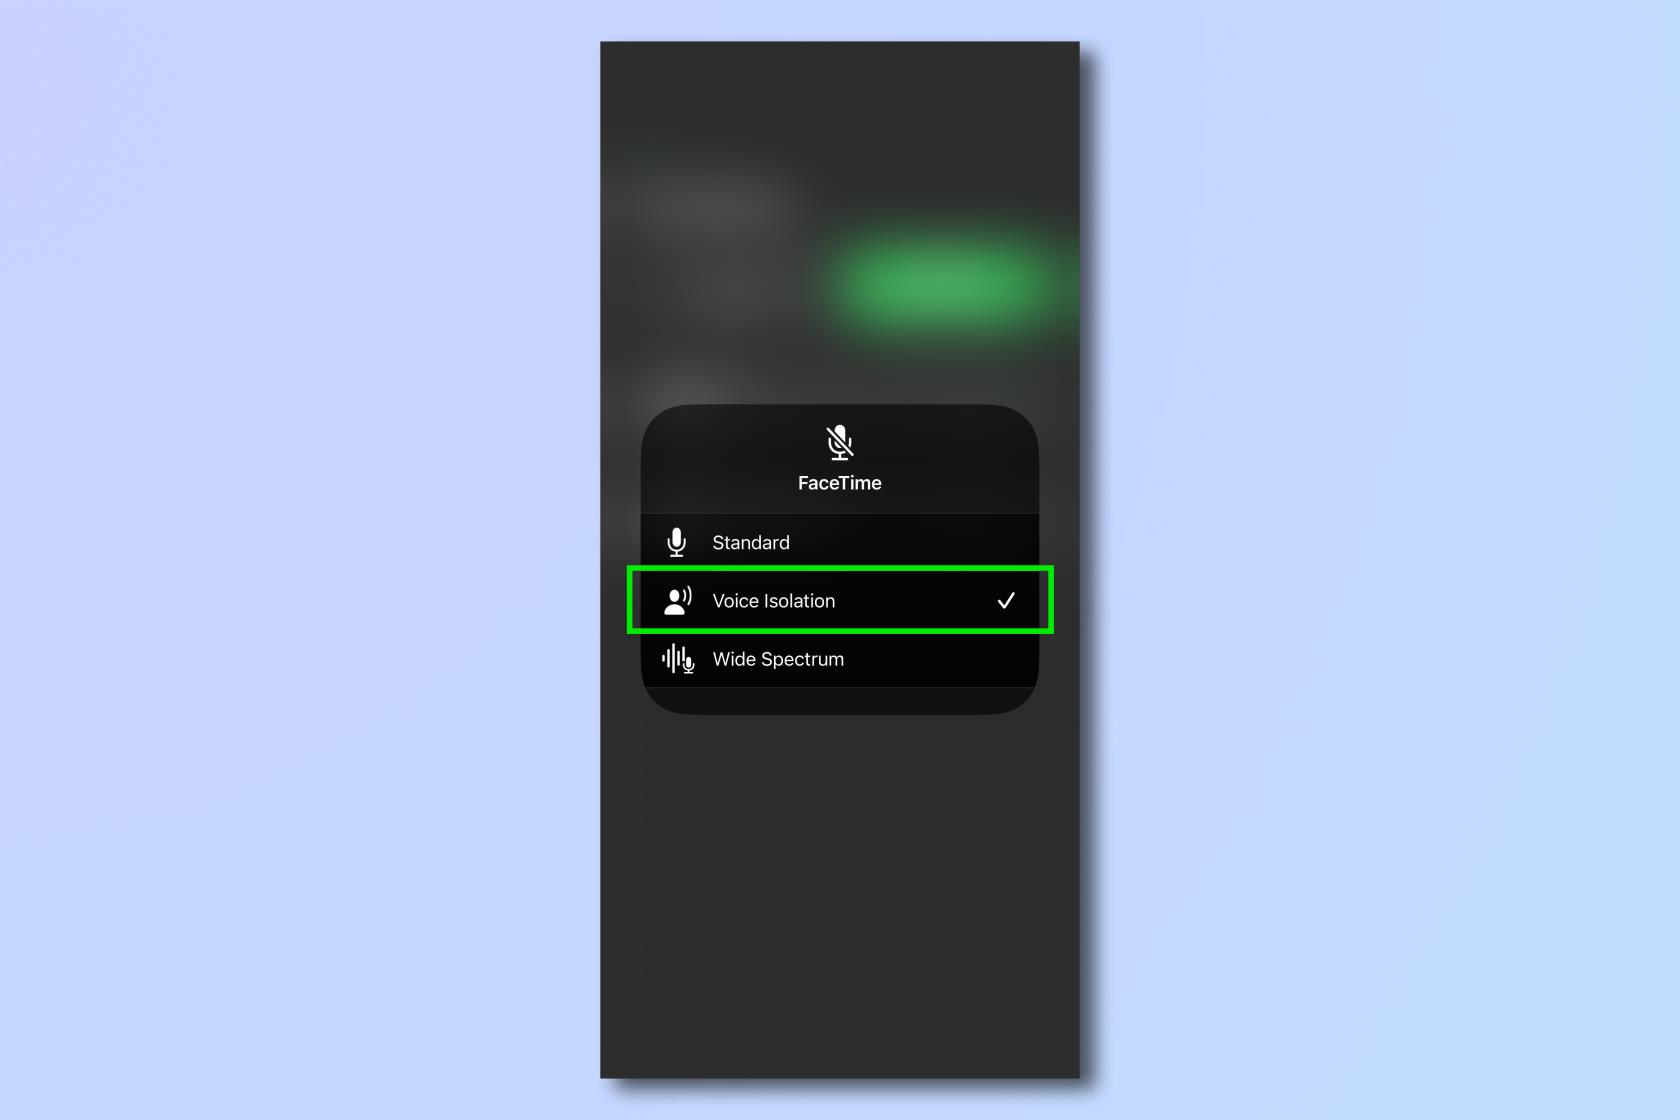 O IOS 16.4 tem um novo recurso para melhorar o som da sua voz nas chamadas — experimente agora